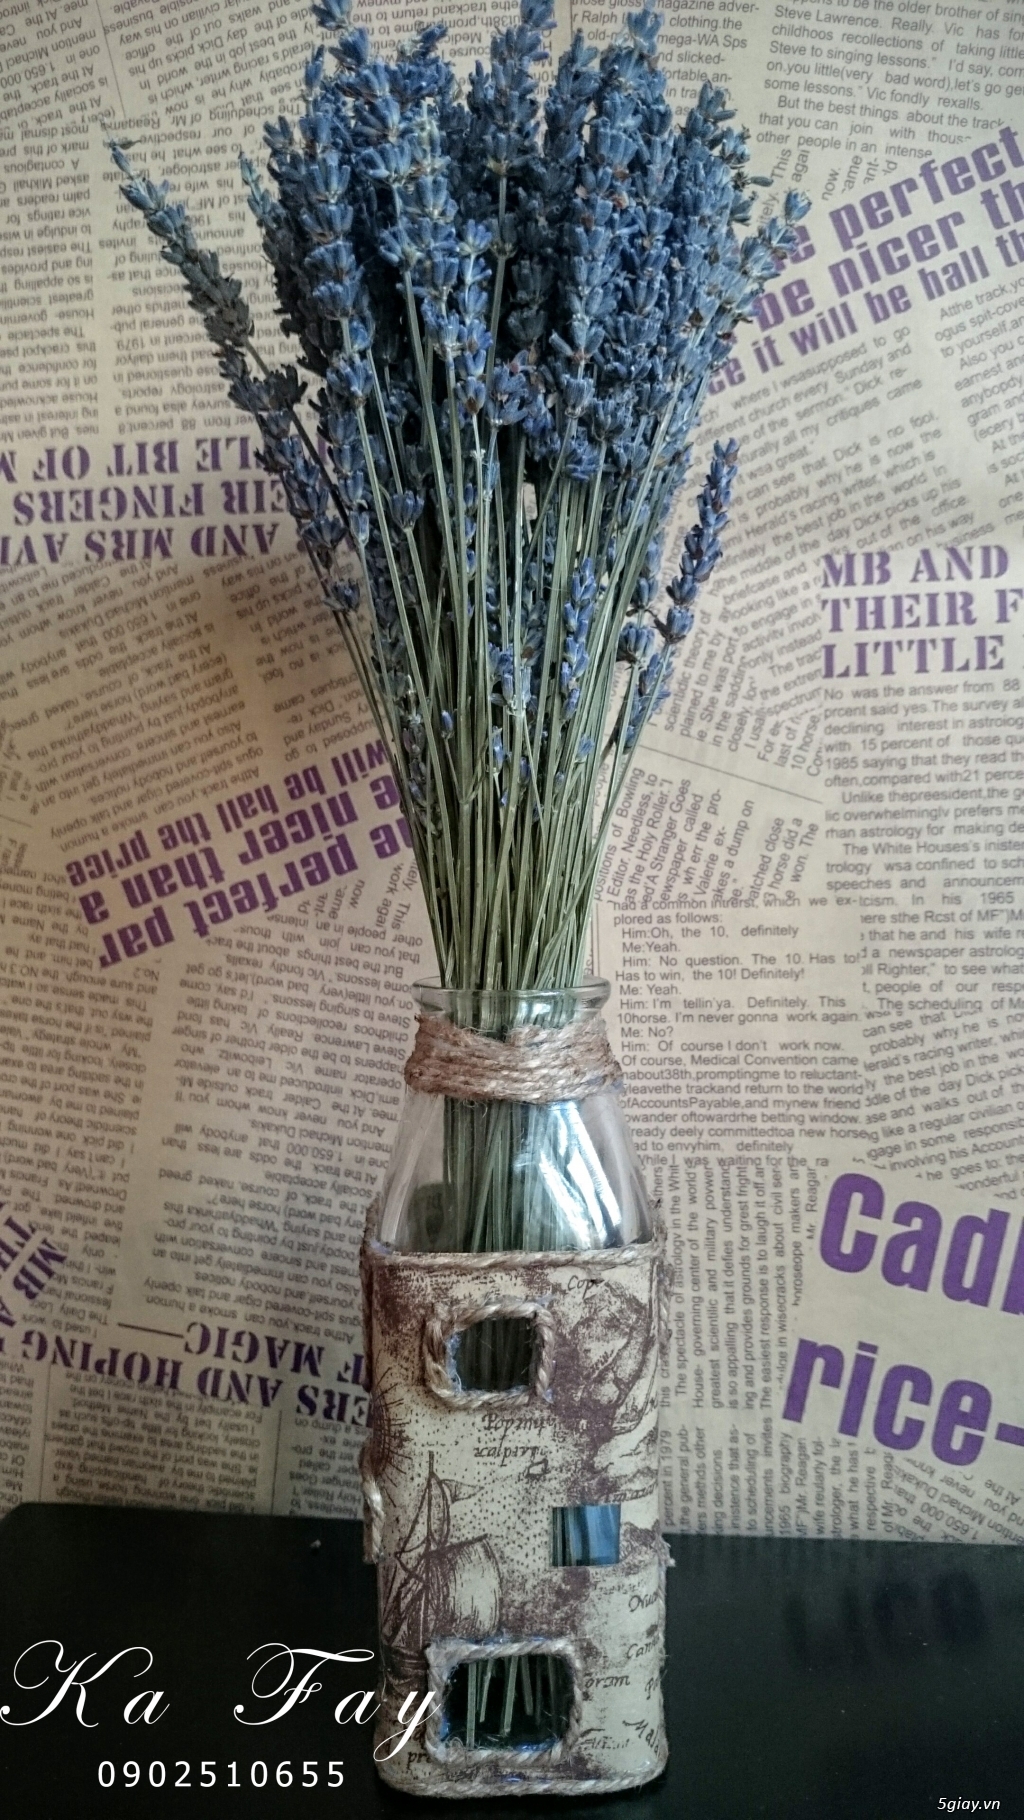 Hoa khô Lavender nhập khẩu từ pháp vs phụ kiện handmade - 7